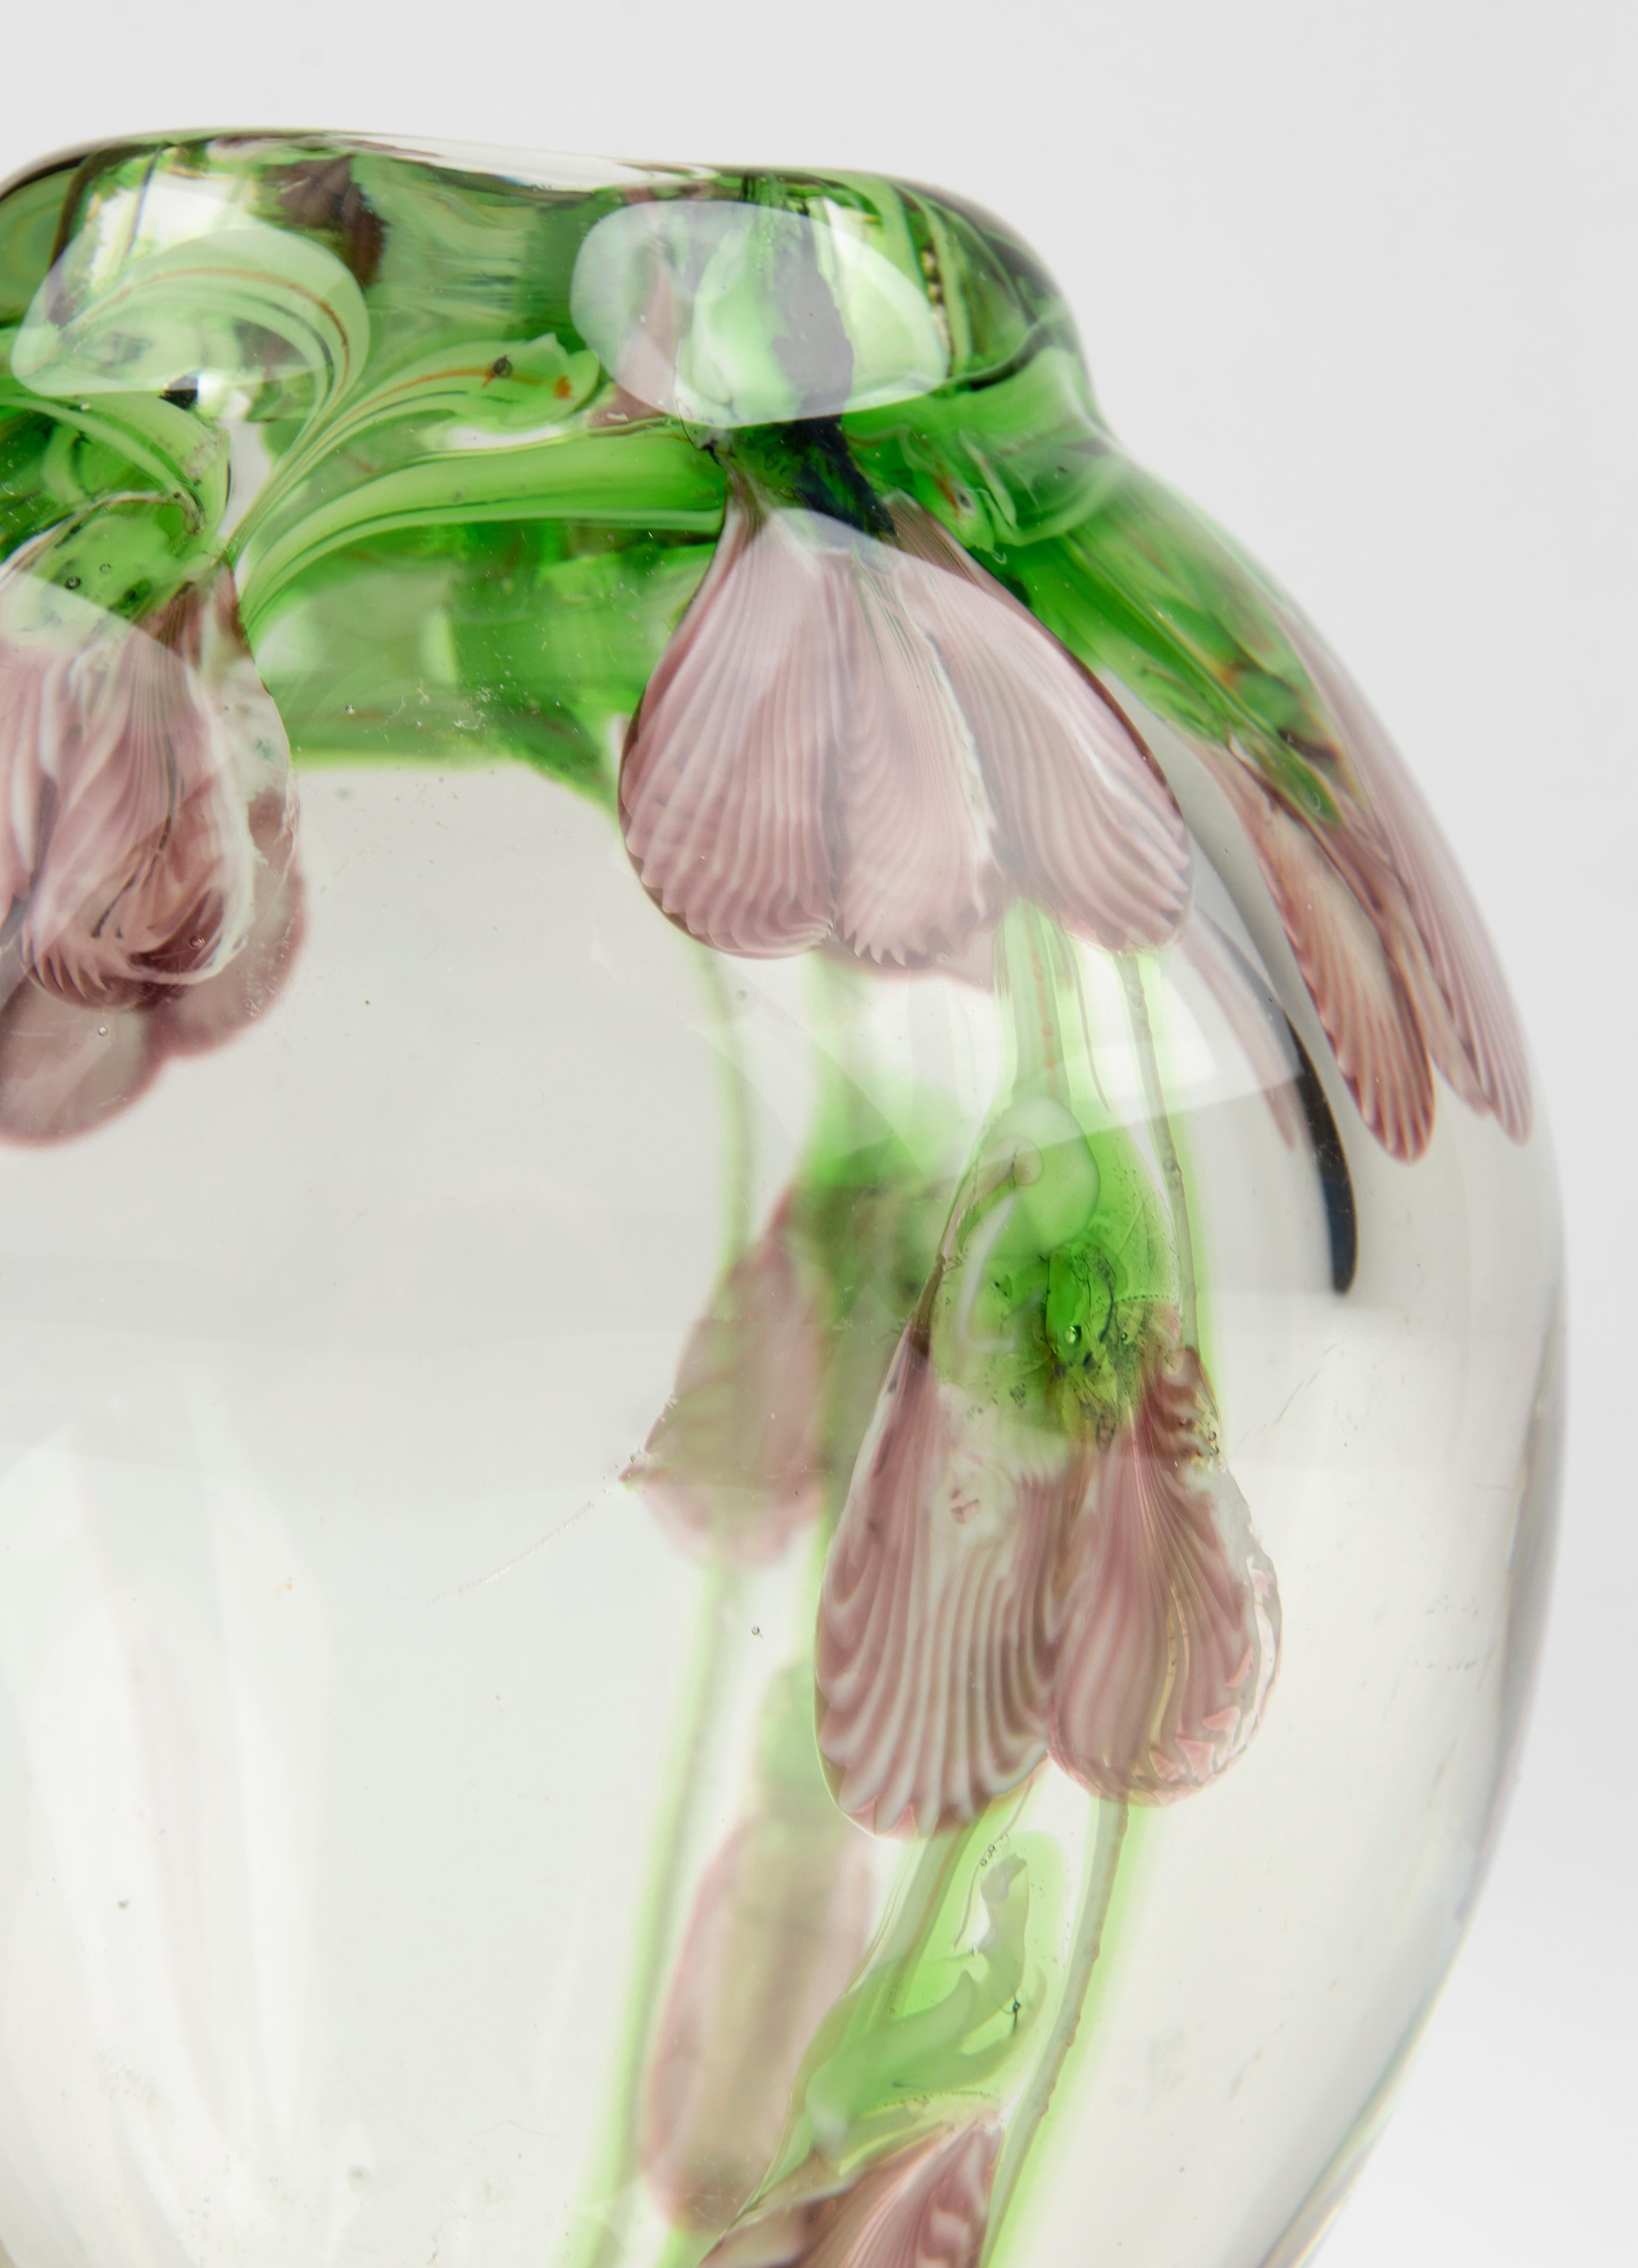 Vase de Murano de style moderne du milieu du siècle, en verre à paroi épaisse avec des décorations florales incrustées. C'est un vase à fleurs unique, beau à tous points de vue.